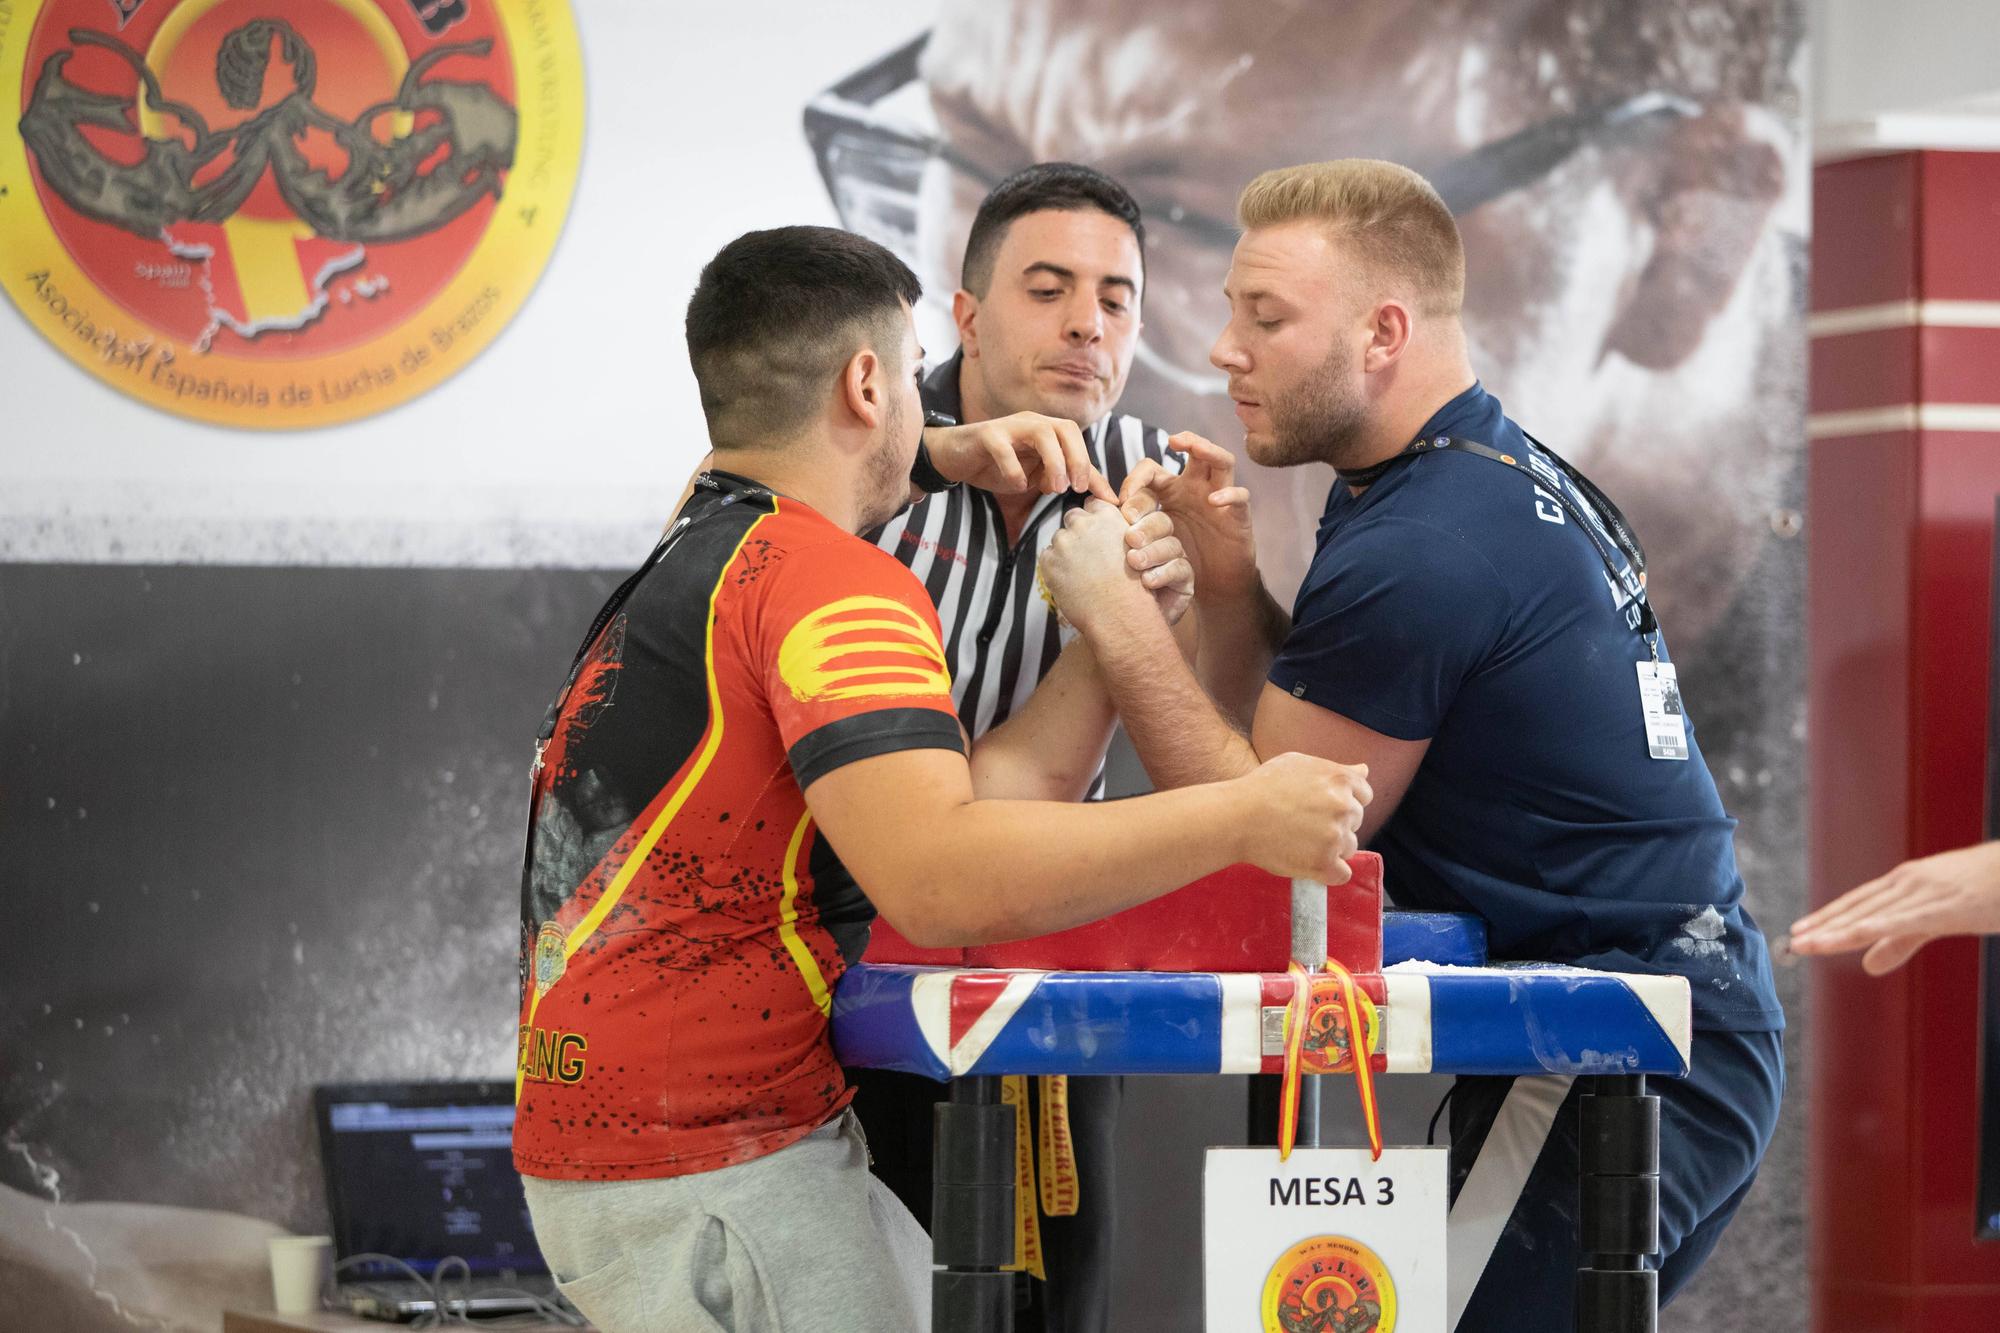 Las imágenes del Campeonato de España de lucha de brazos celebrado en s'Arenal